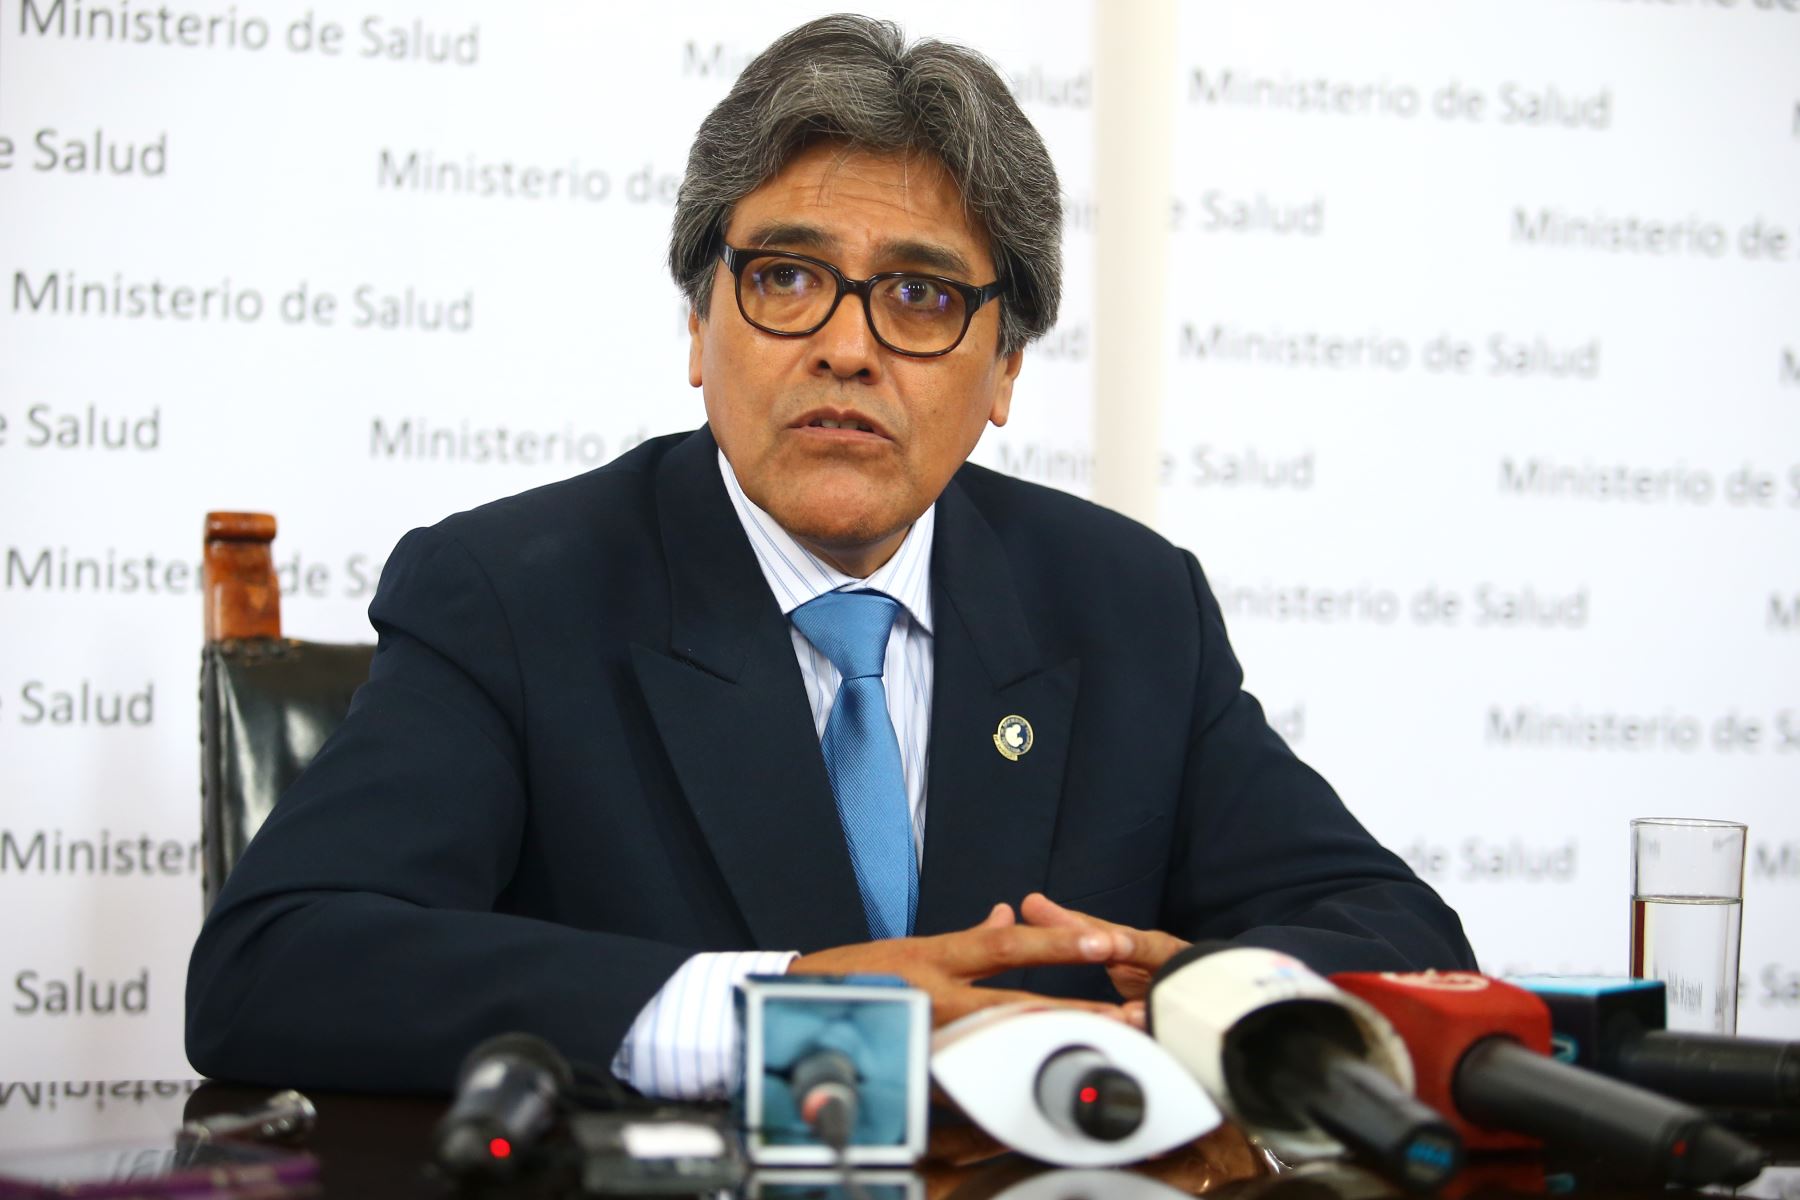 Ministro de Salud, Abel Salinas Rivas, interesado en que médicos conozcan cómo se hace gestión pública en el Minsa. ANDINA/Melina Mejía